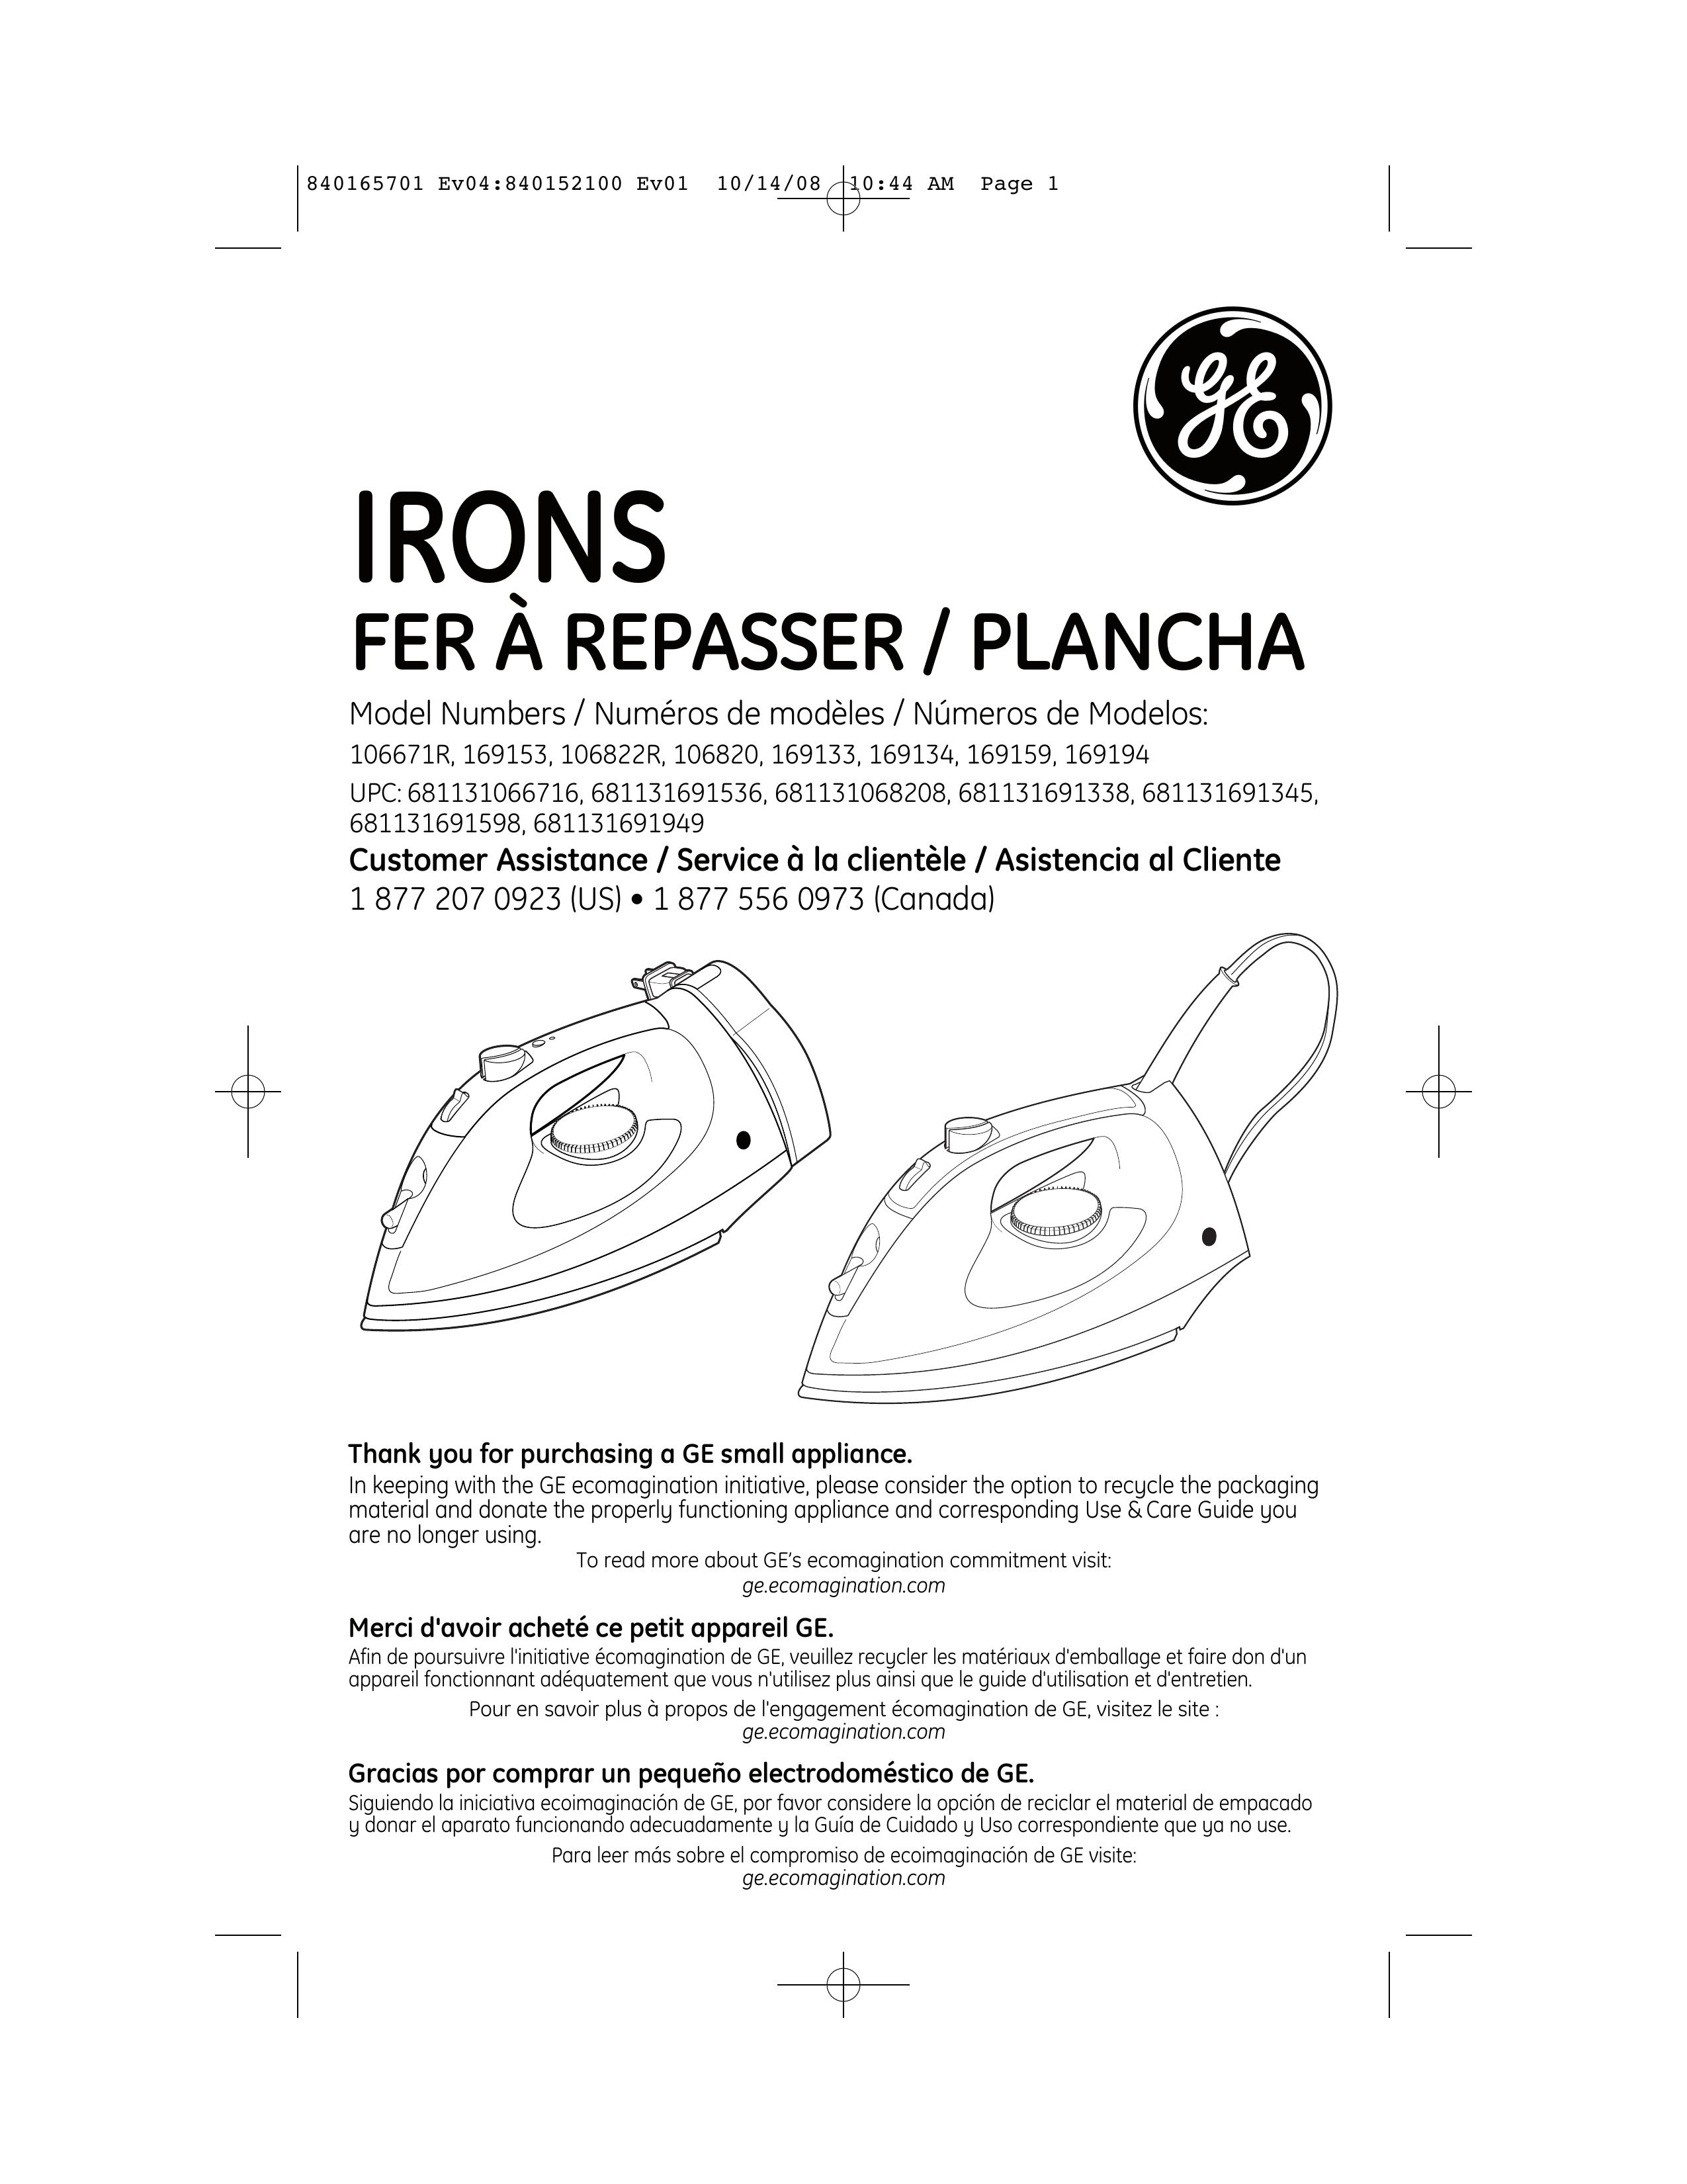 GE 681131691949 Iron User Manual